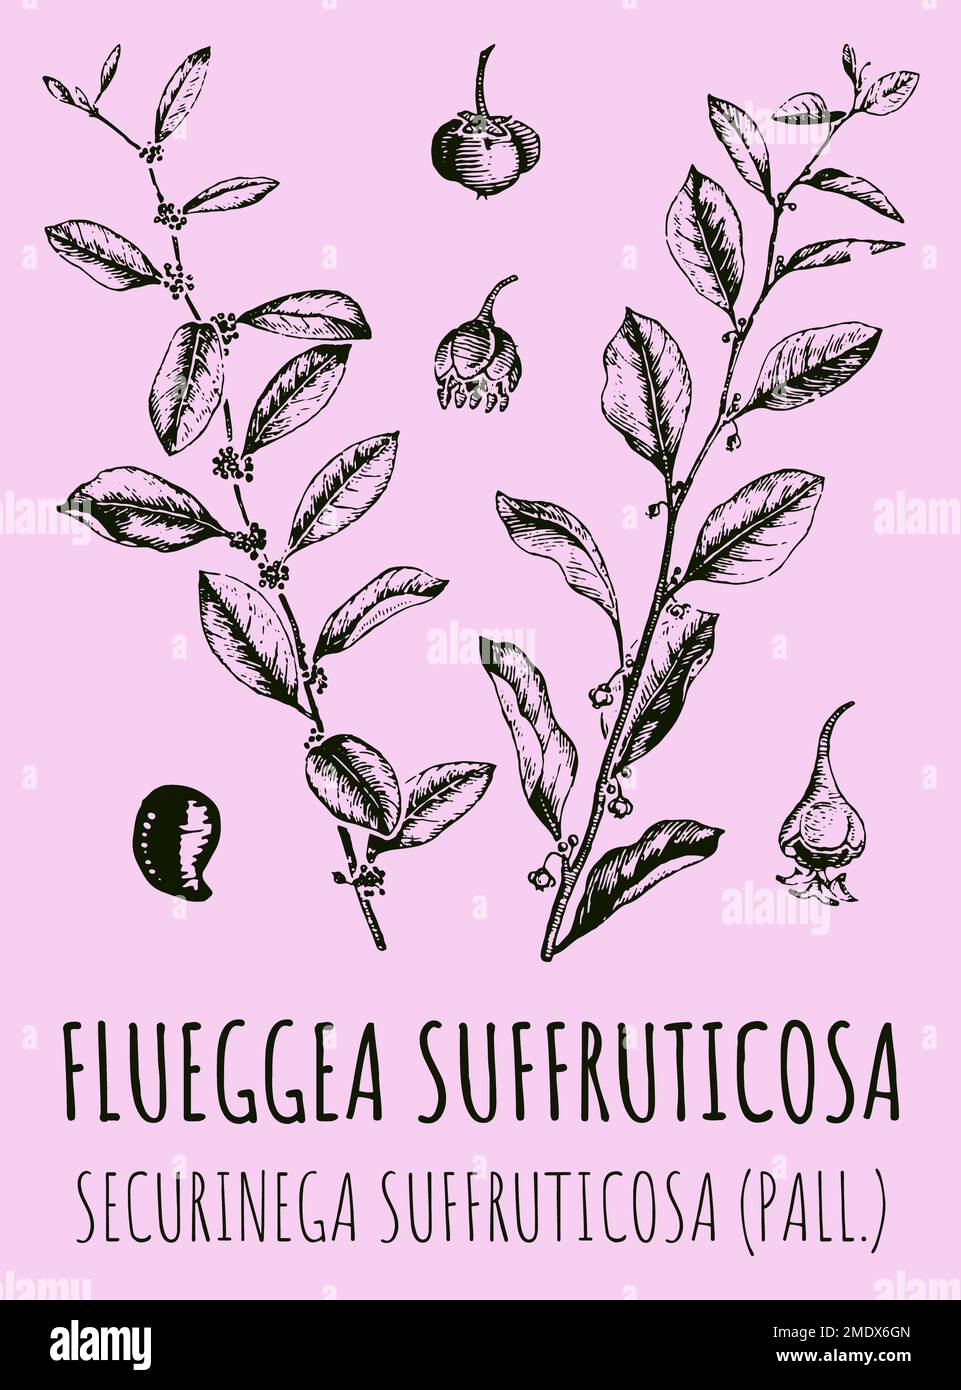 Drawings of FLUEGGEA SUFFRUTICOSA. Hand drawn illustration. Latin name SECURINEGA SUFFRUTICOSA . Stock Photo